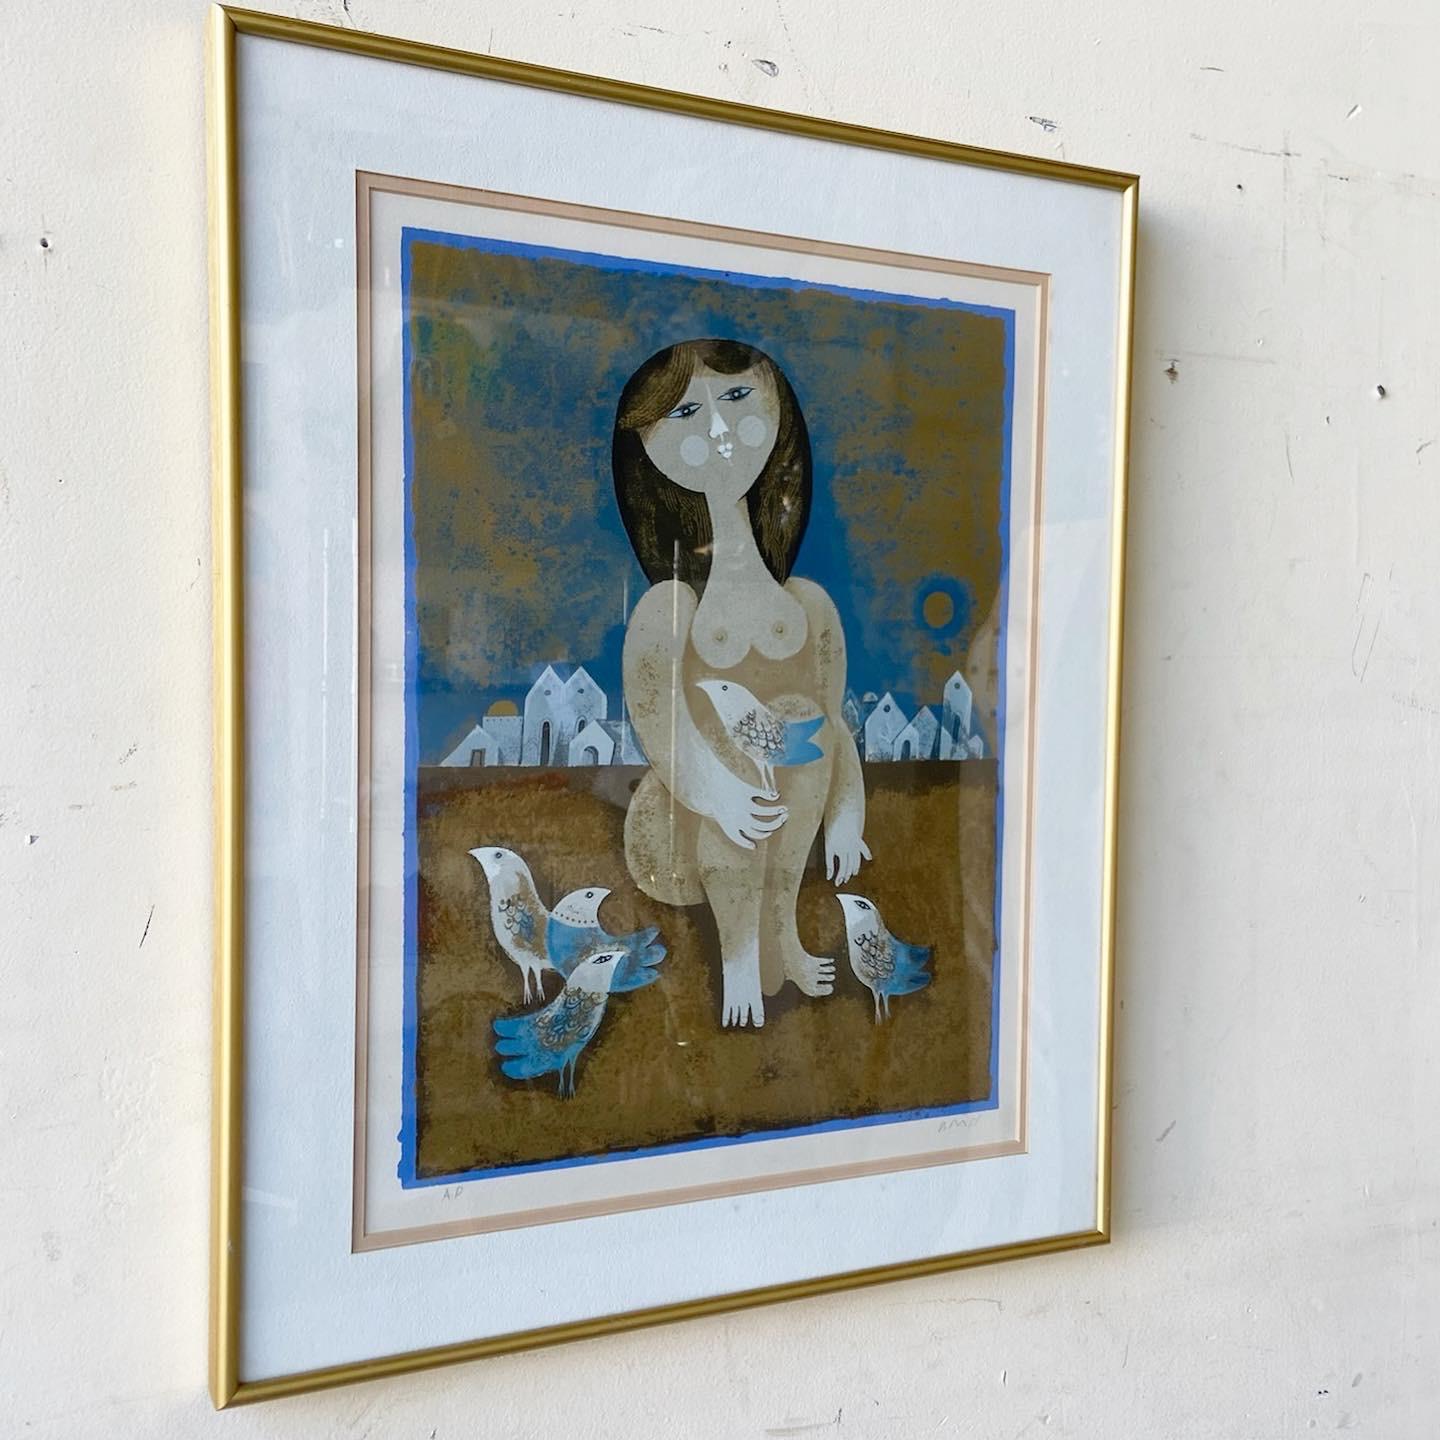 Außergewöhnliche signierte und gerahmte Lithographie von Sam Briss. Mit einer surrealen Darstellung einer nackten Frau mit Vögeln.
